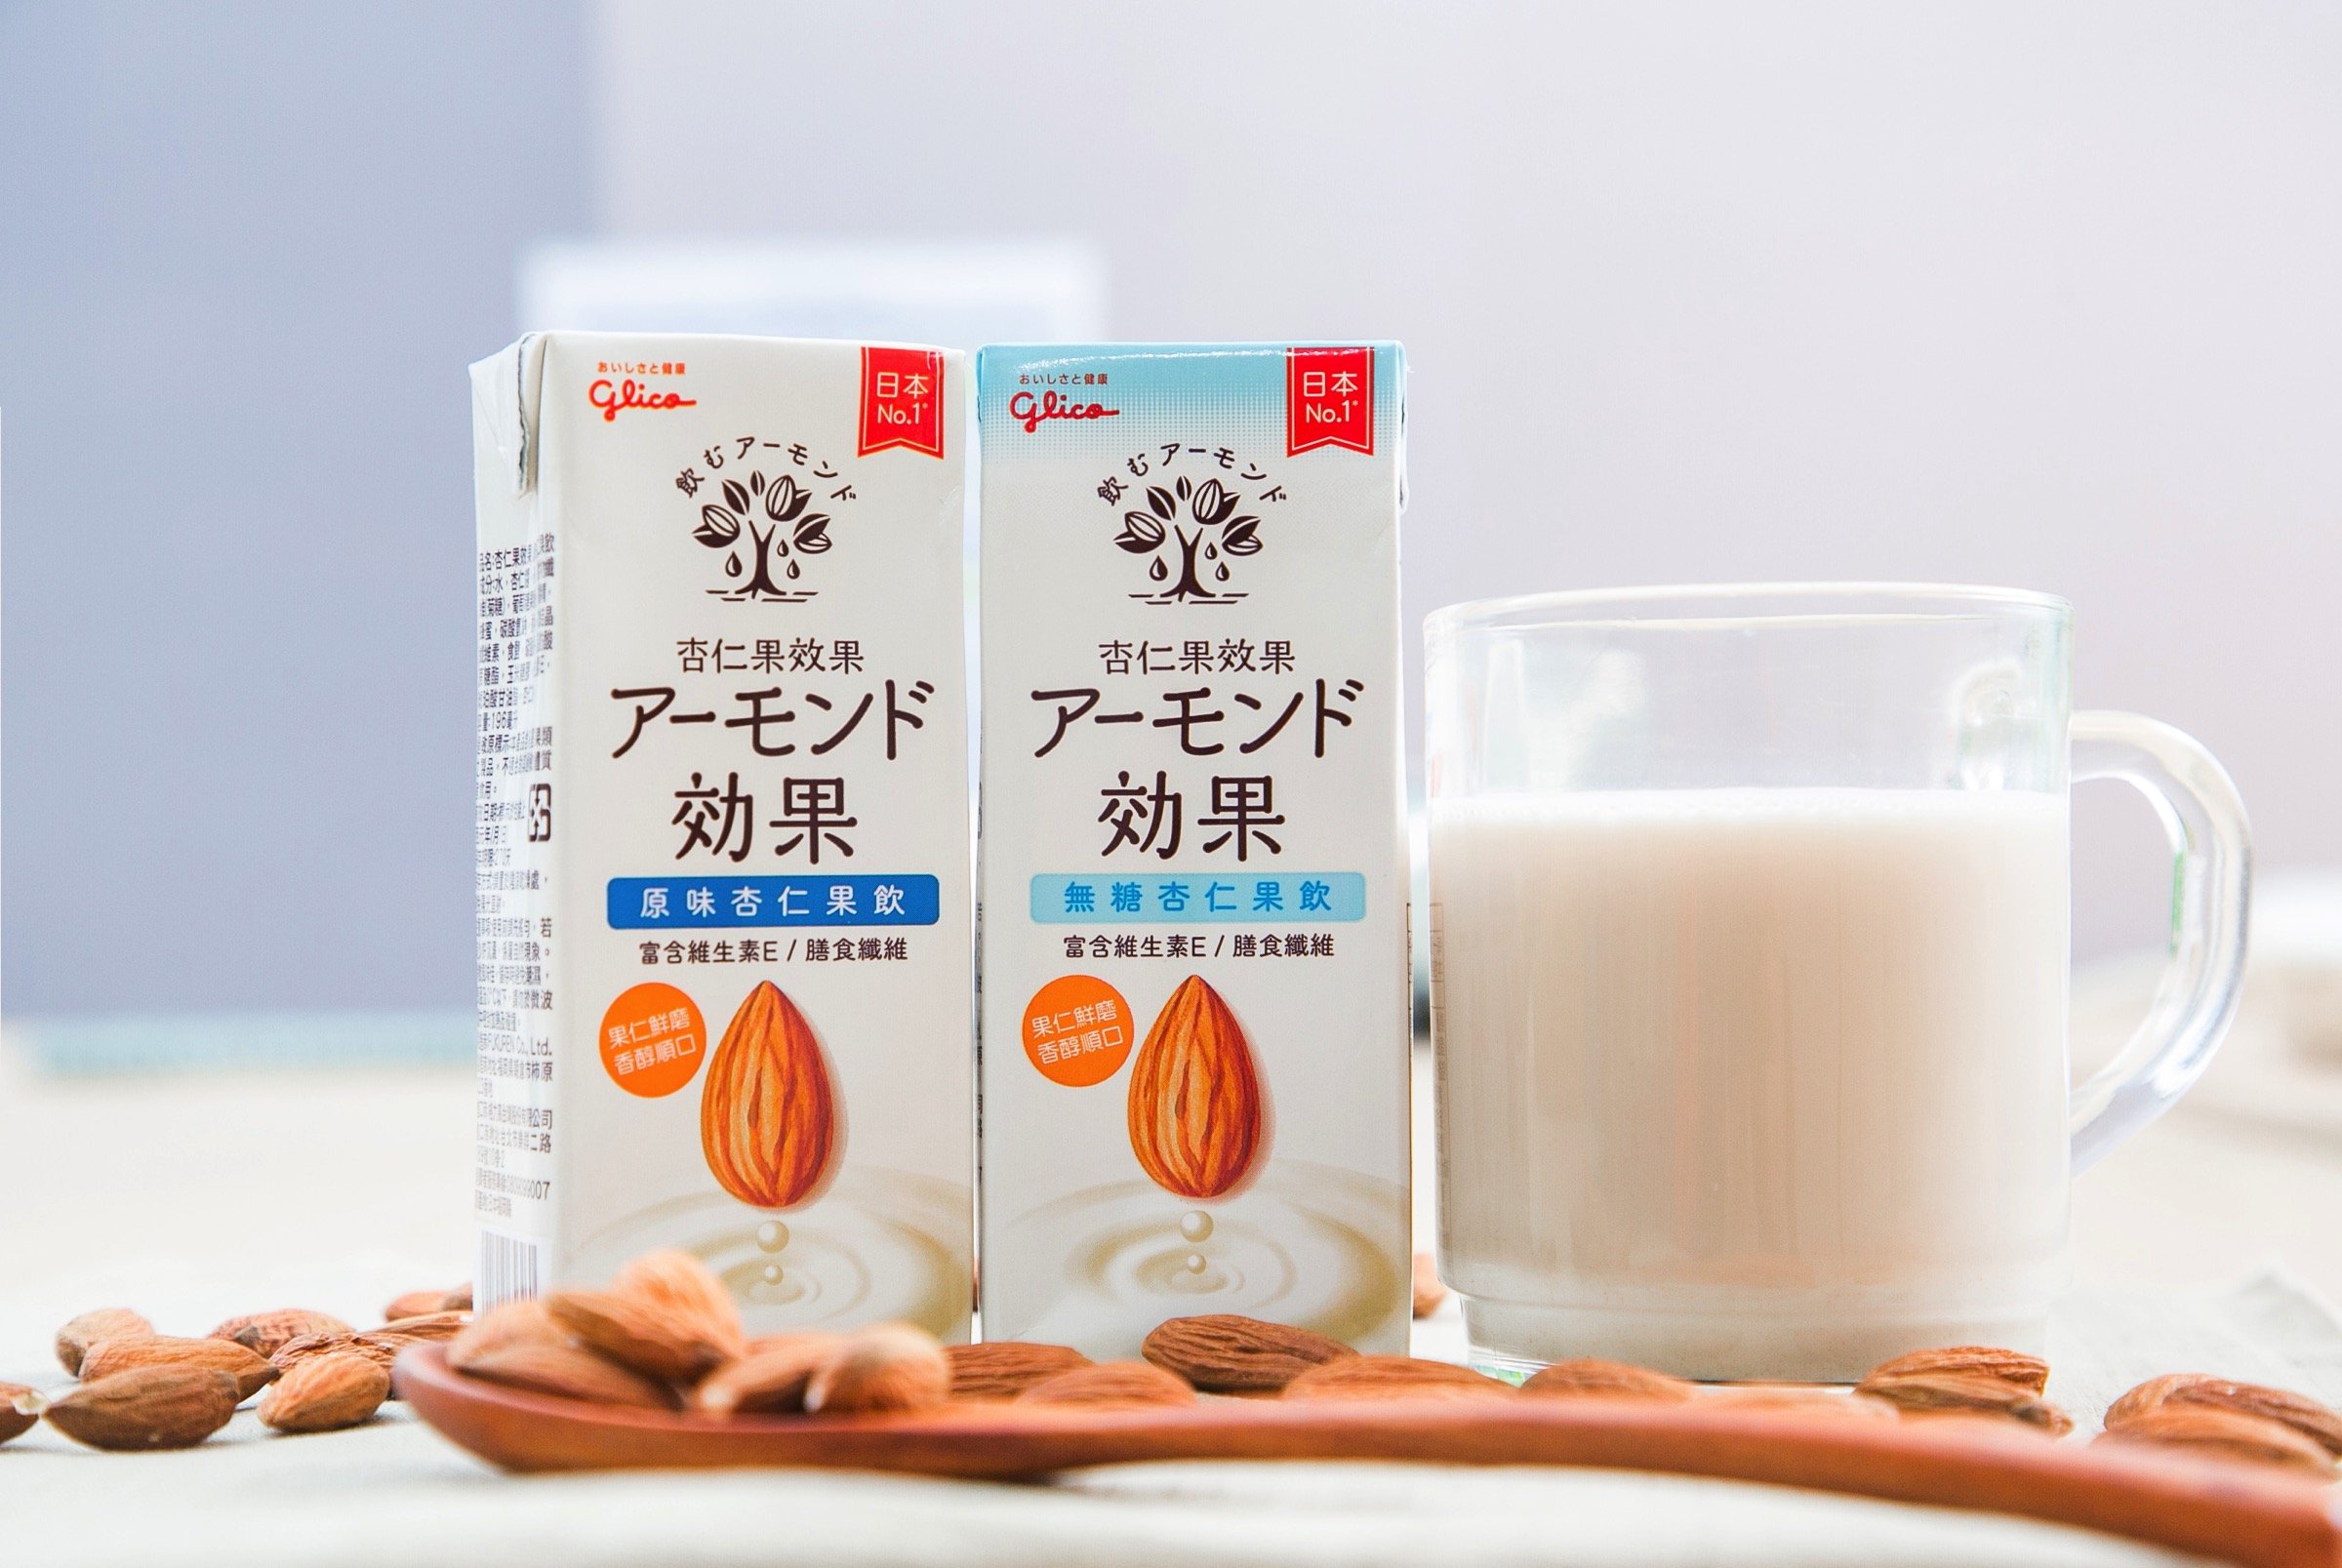 植物奶新選擇 日本人超愛的「杏仁果效果」歡慶新品登台